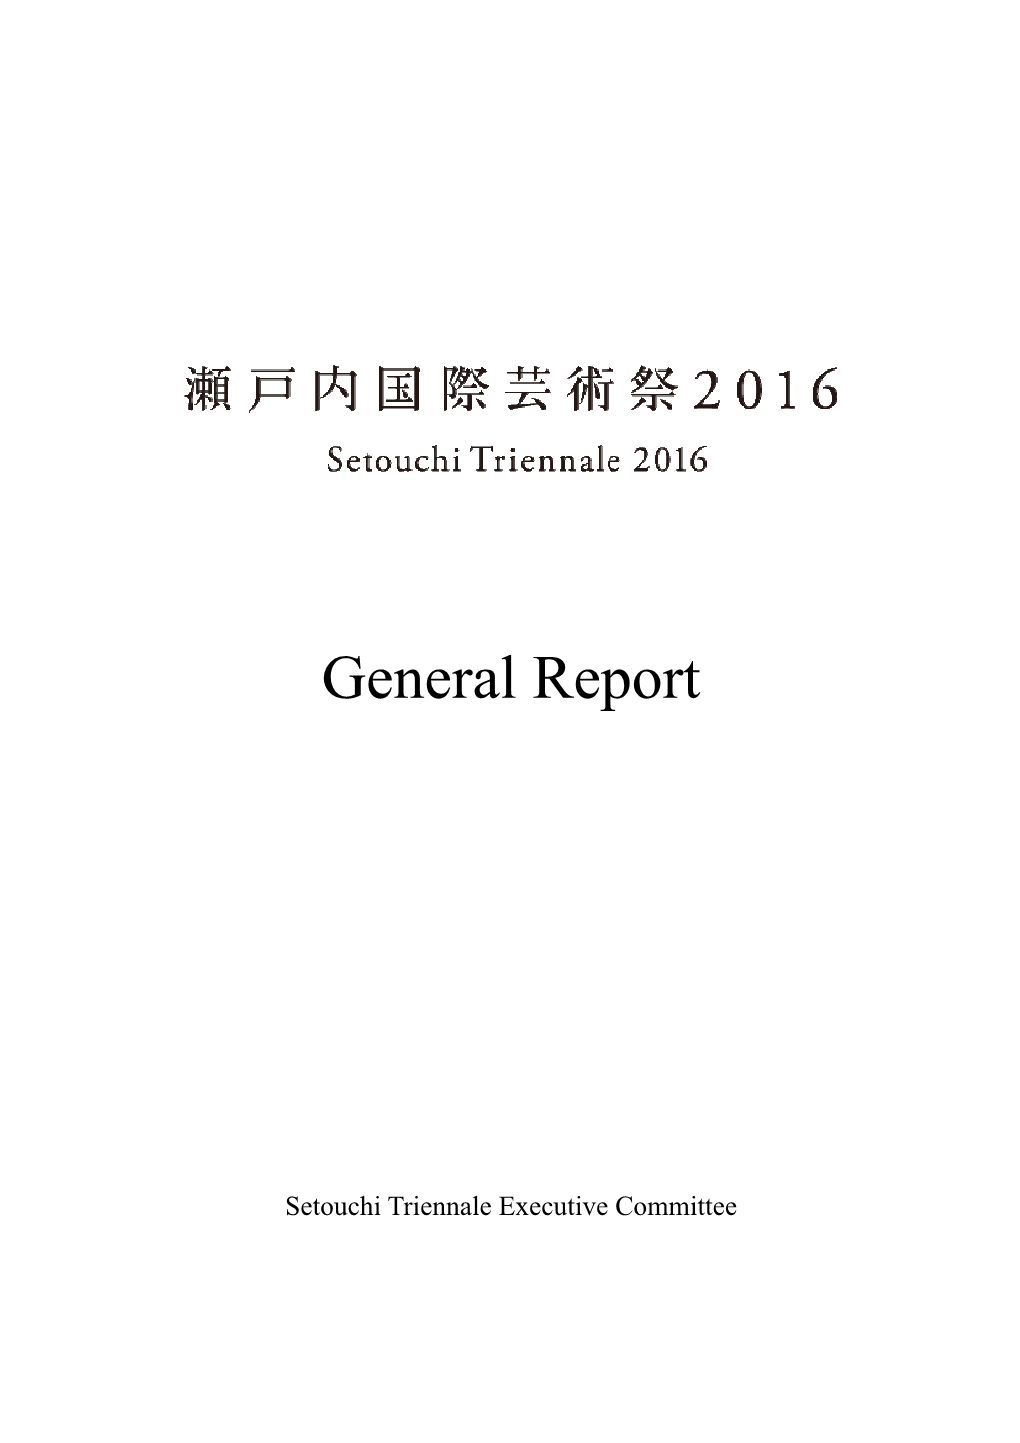 2016 General Report